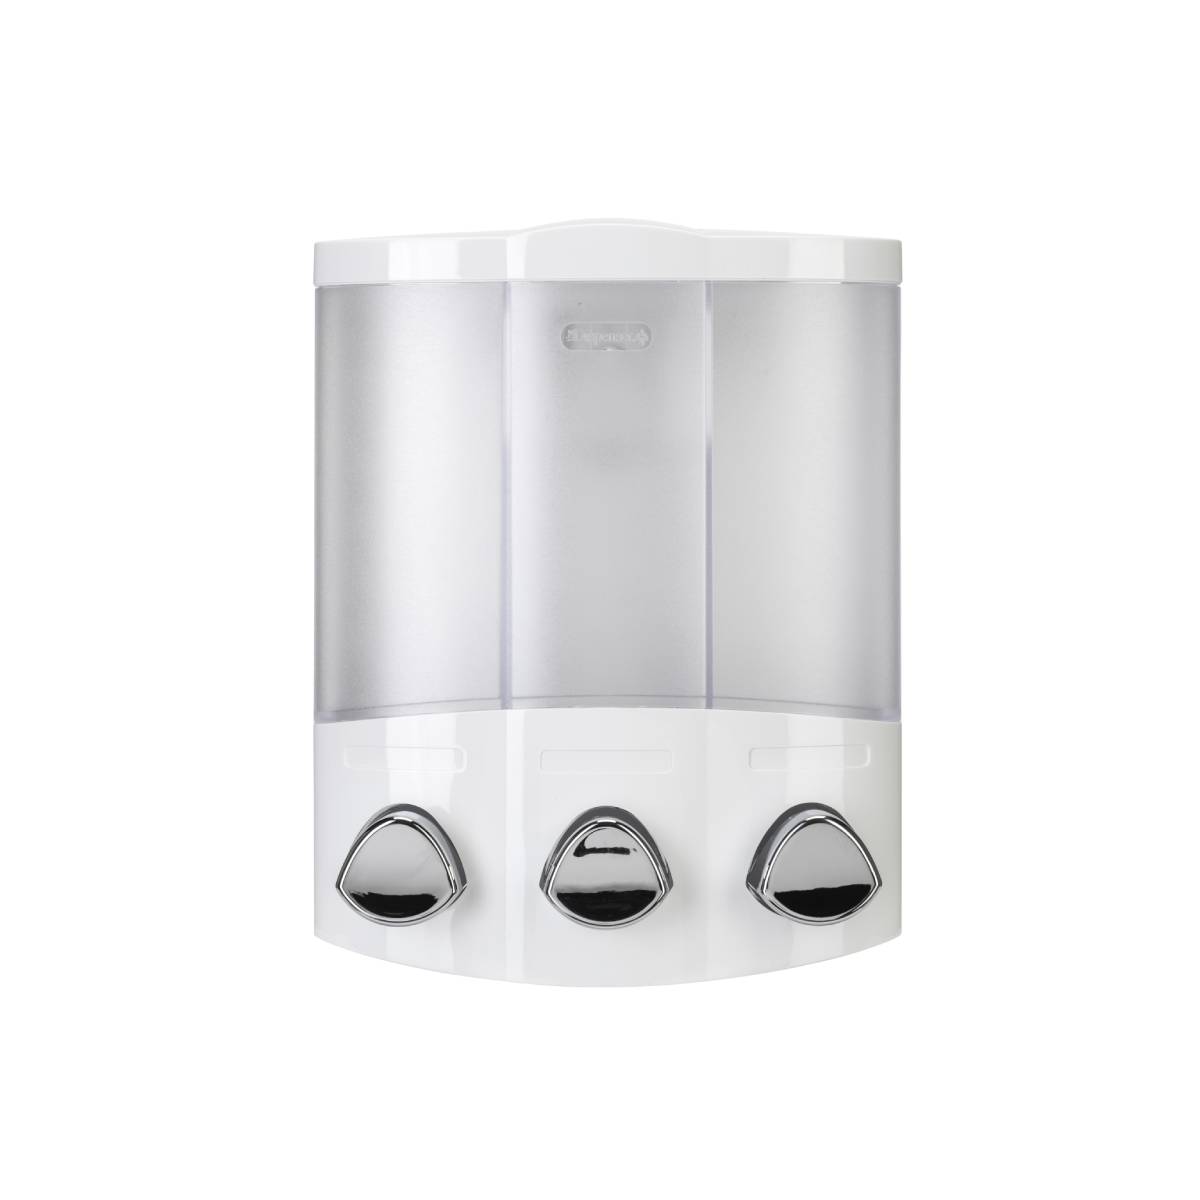 Croydex Euro Dispenser Trio - White (12844)